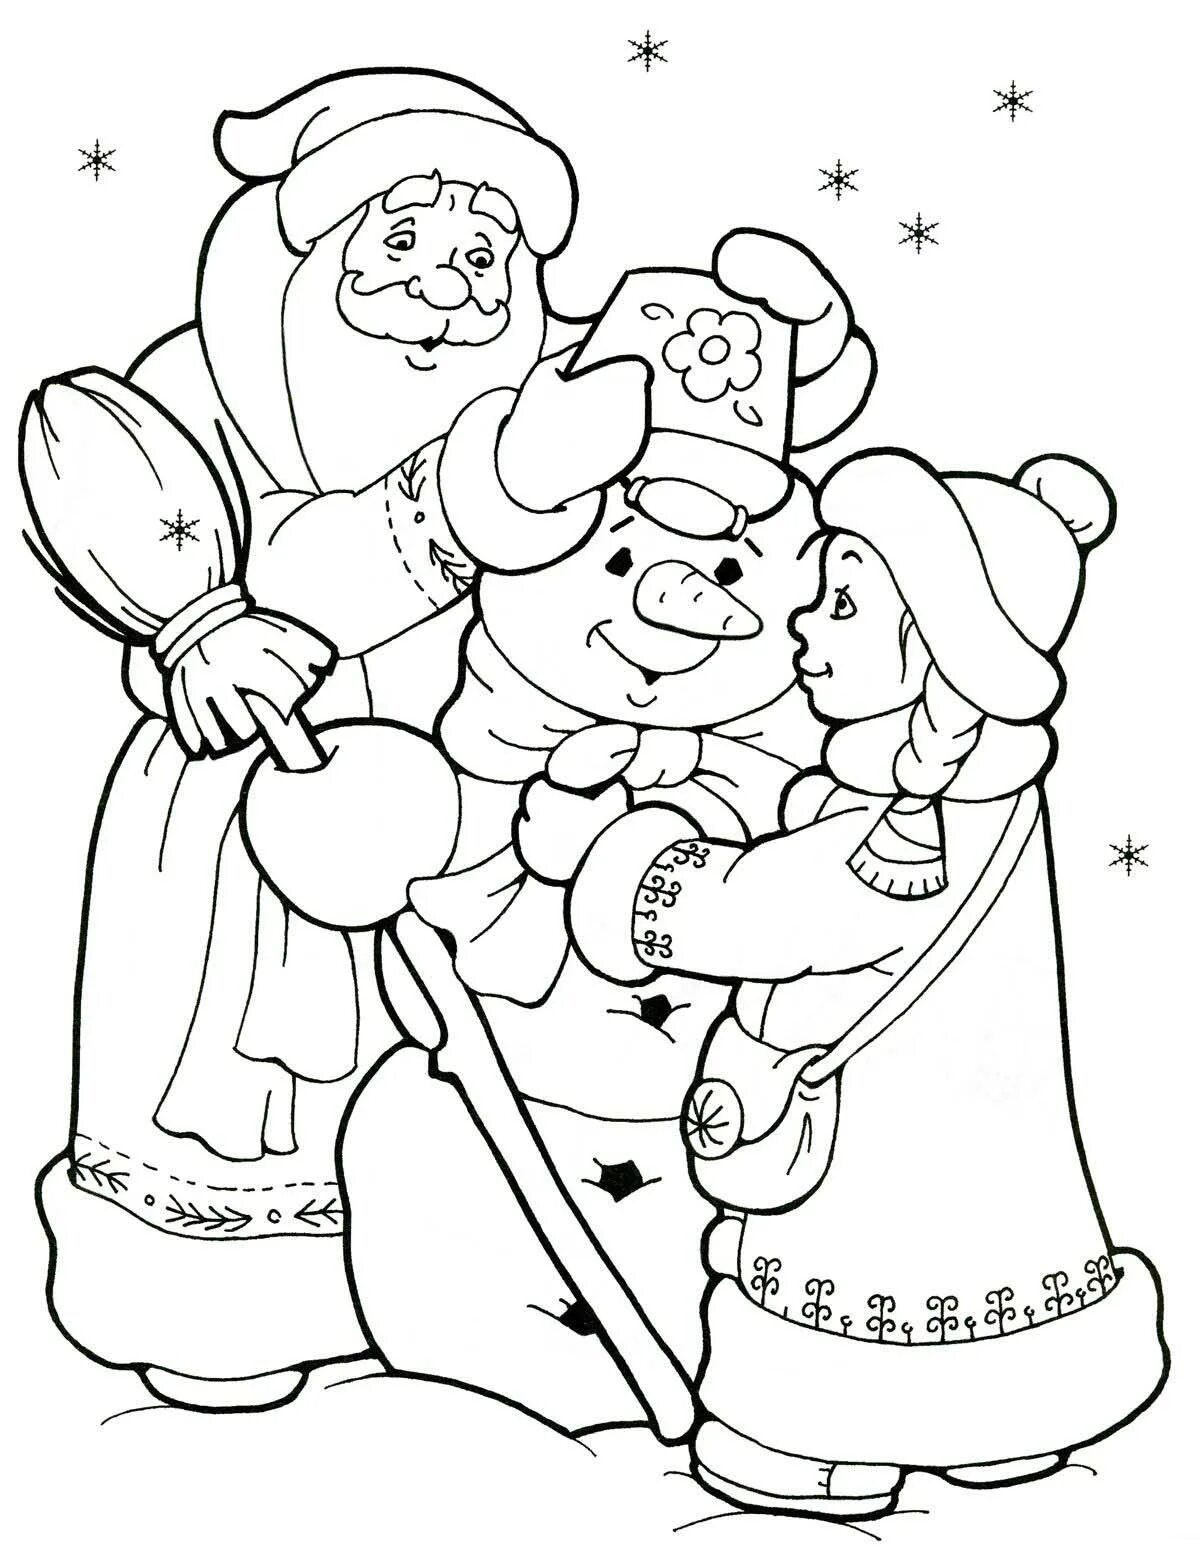 Новый год распечатанная. Дед Мороз и Снегурочка раскраска. Раскраска Деда Мороза и Снегурочки. Дедушка Мороз и Снегурочка раскраска. Новогодние раскраски дед Мороз и Снегурочка.